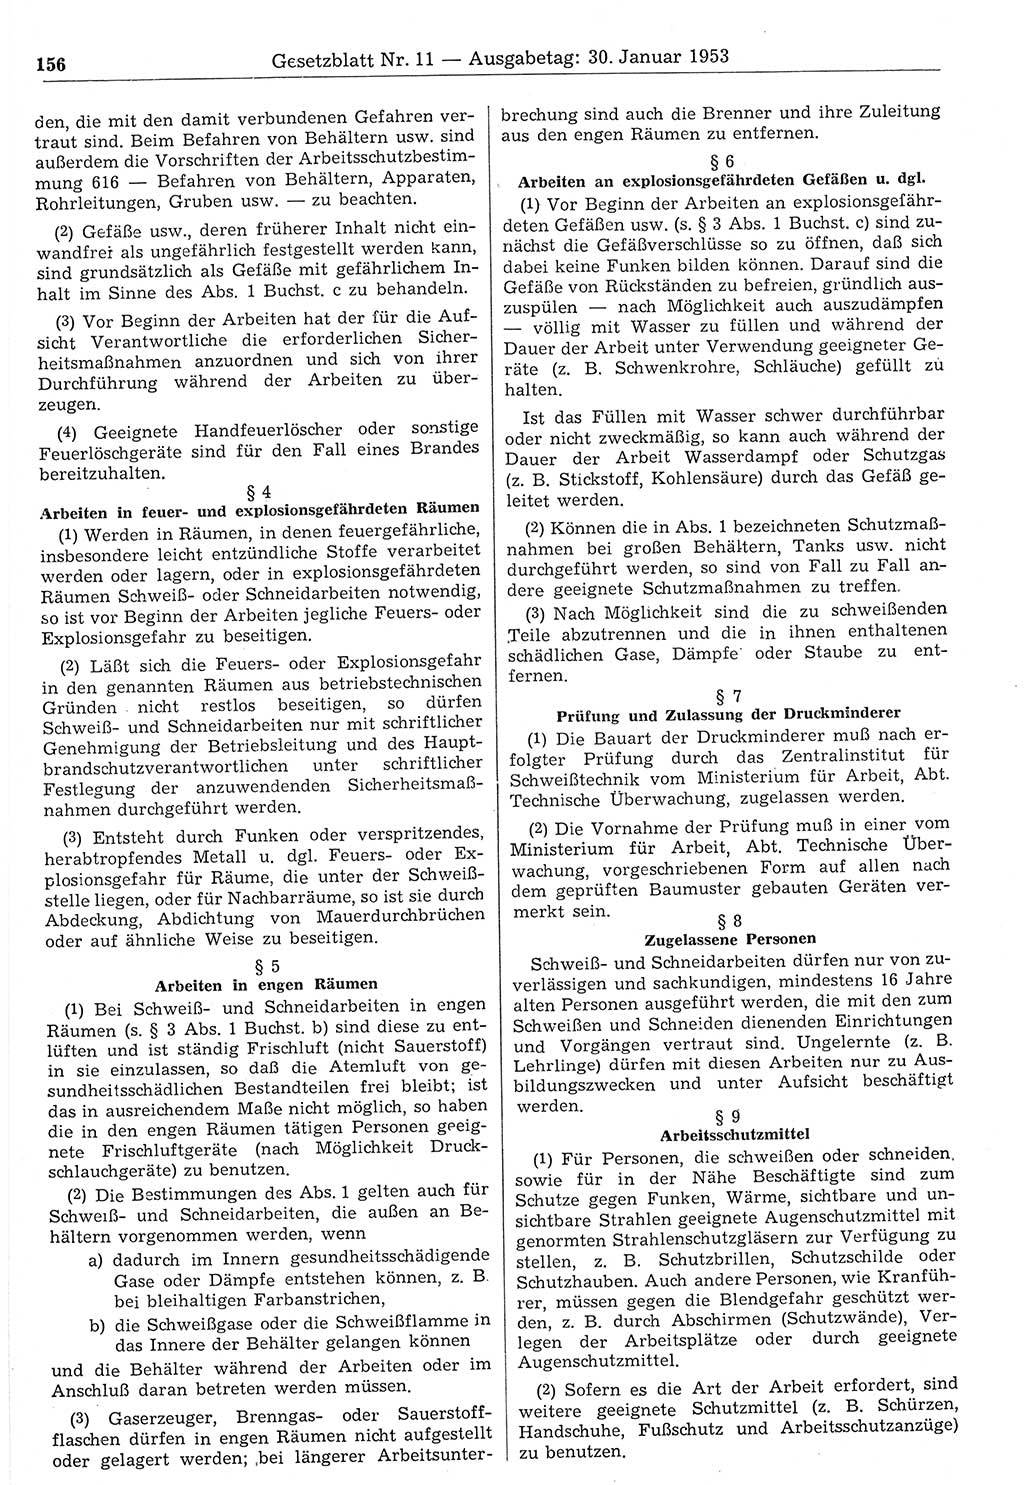 Gesetzblatt (GBl.) der Deutschen Demokratischen Republik (DDR) 1953, Seite 156 (GBl. DDR 1953, S. 156)